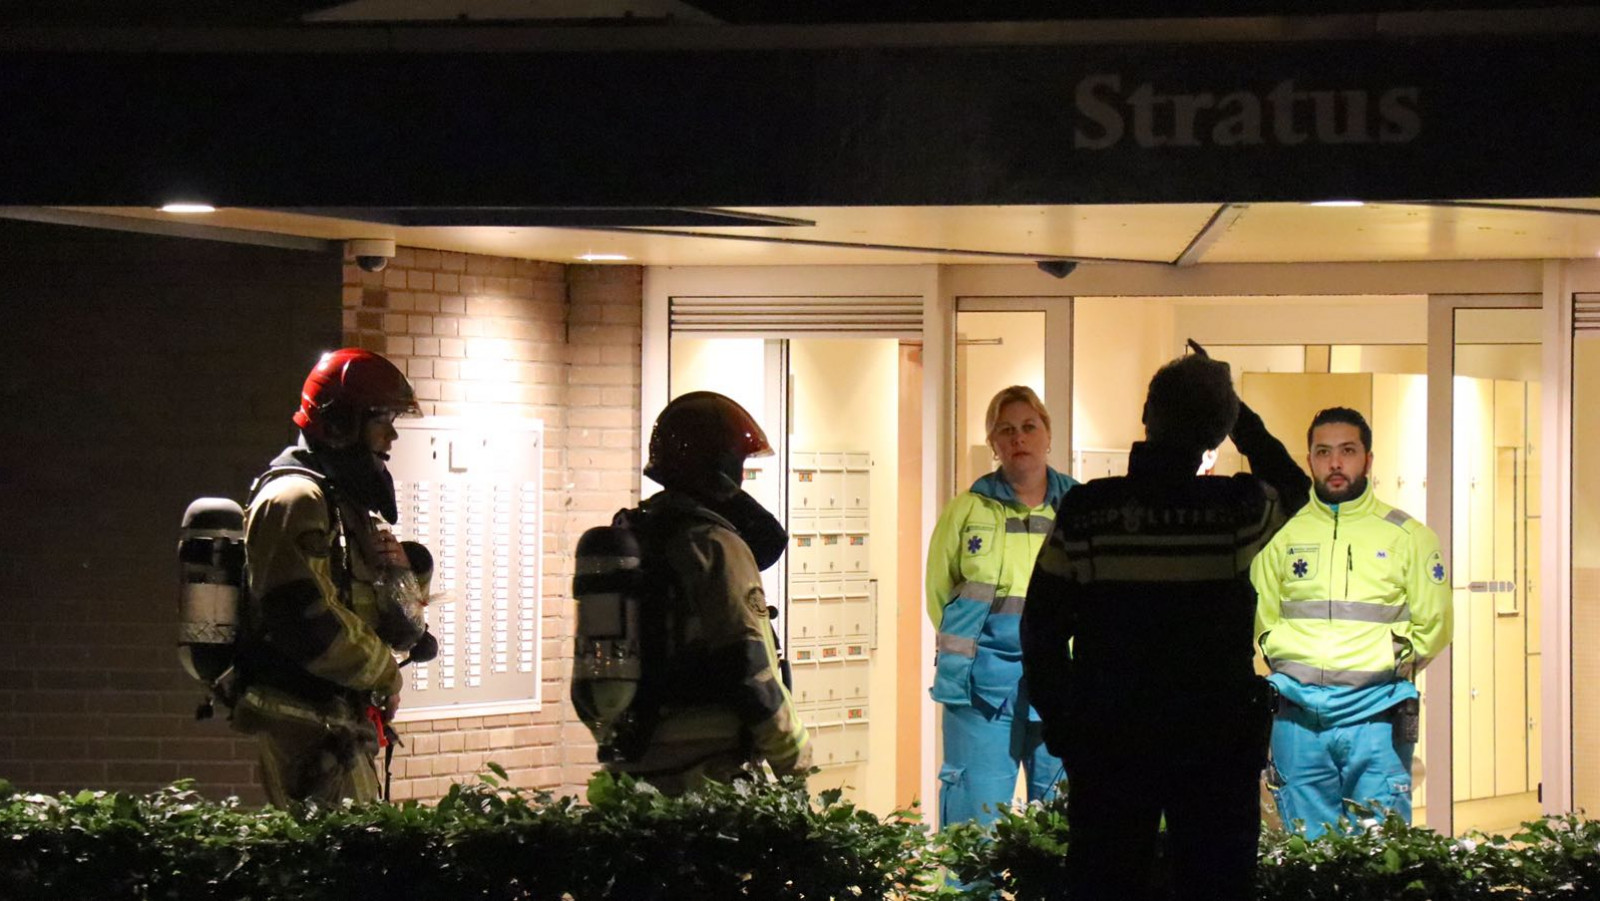 wee bewoners flat Amstelveen naar ziekenhuis na brand